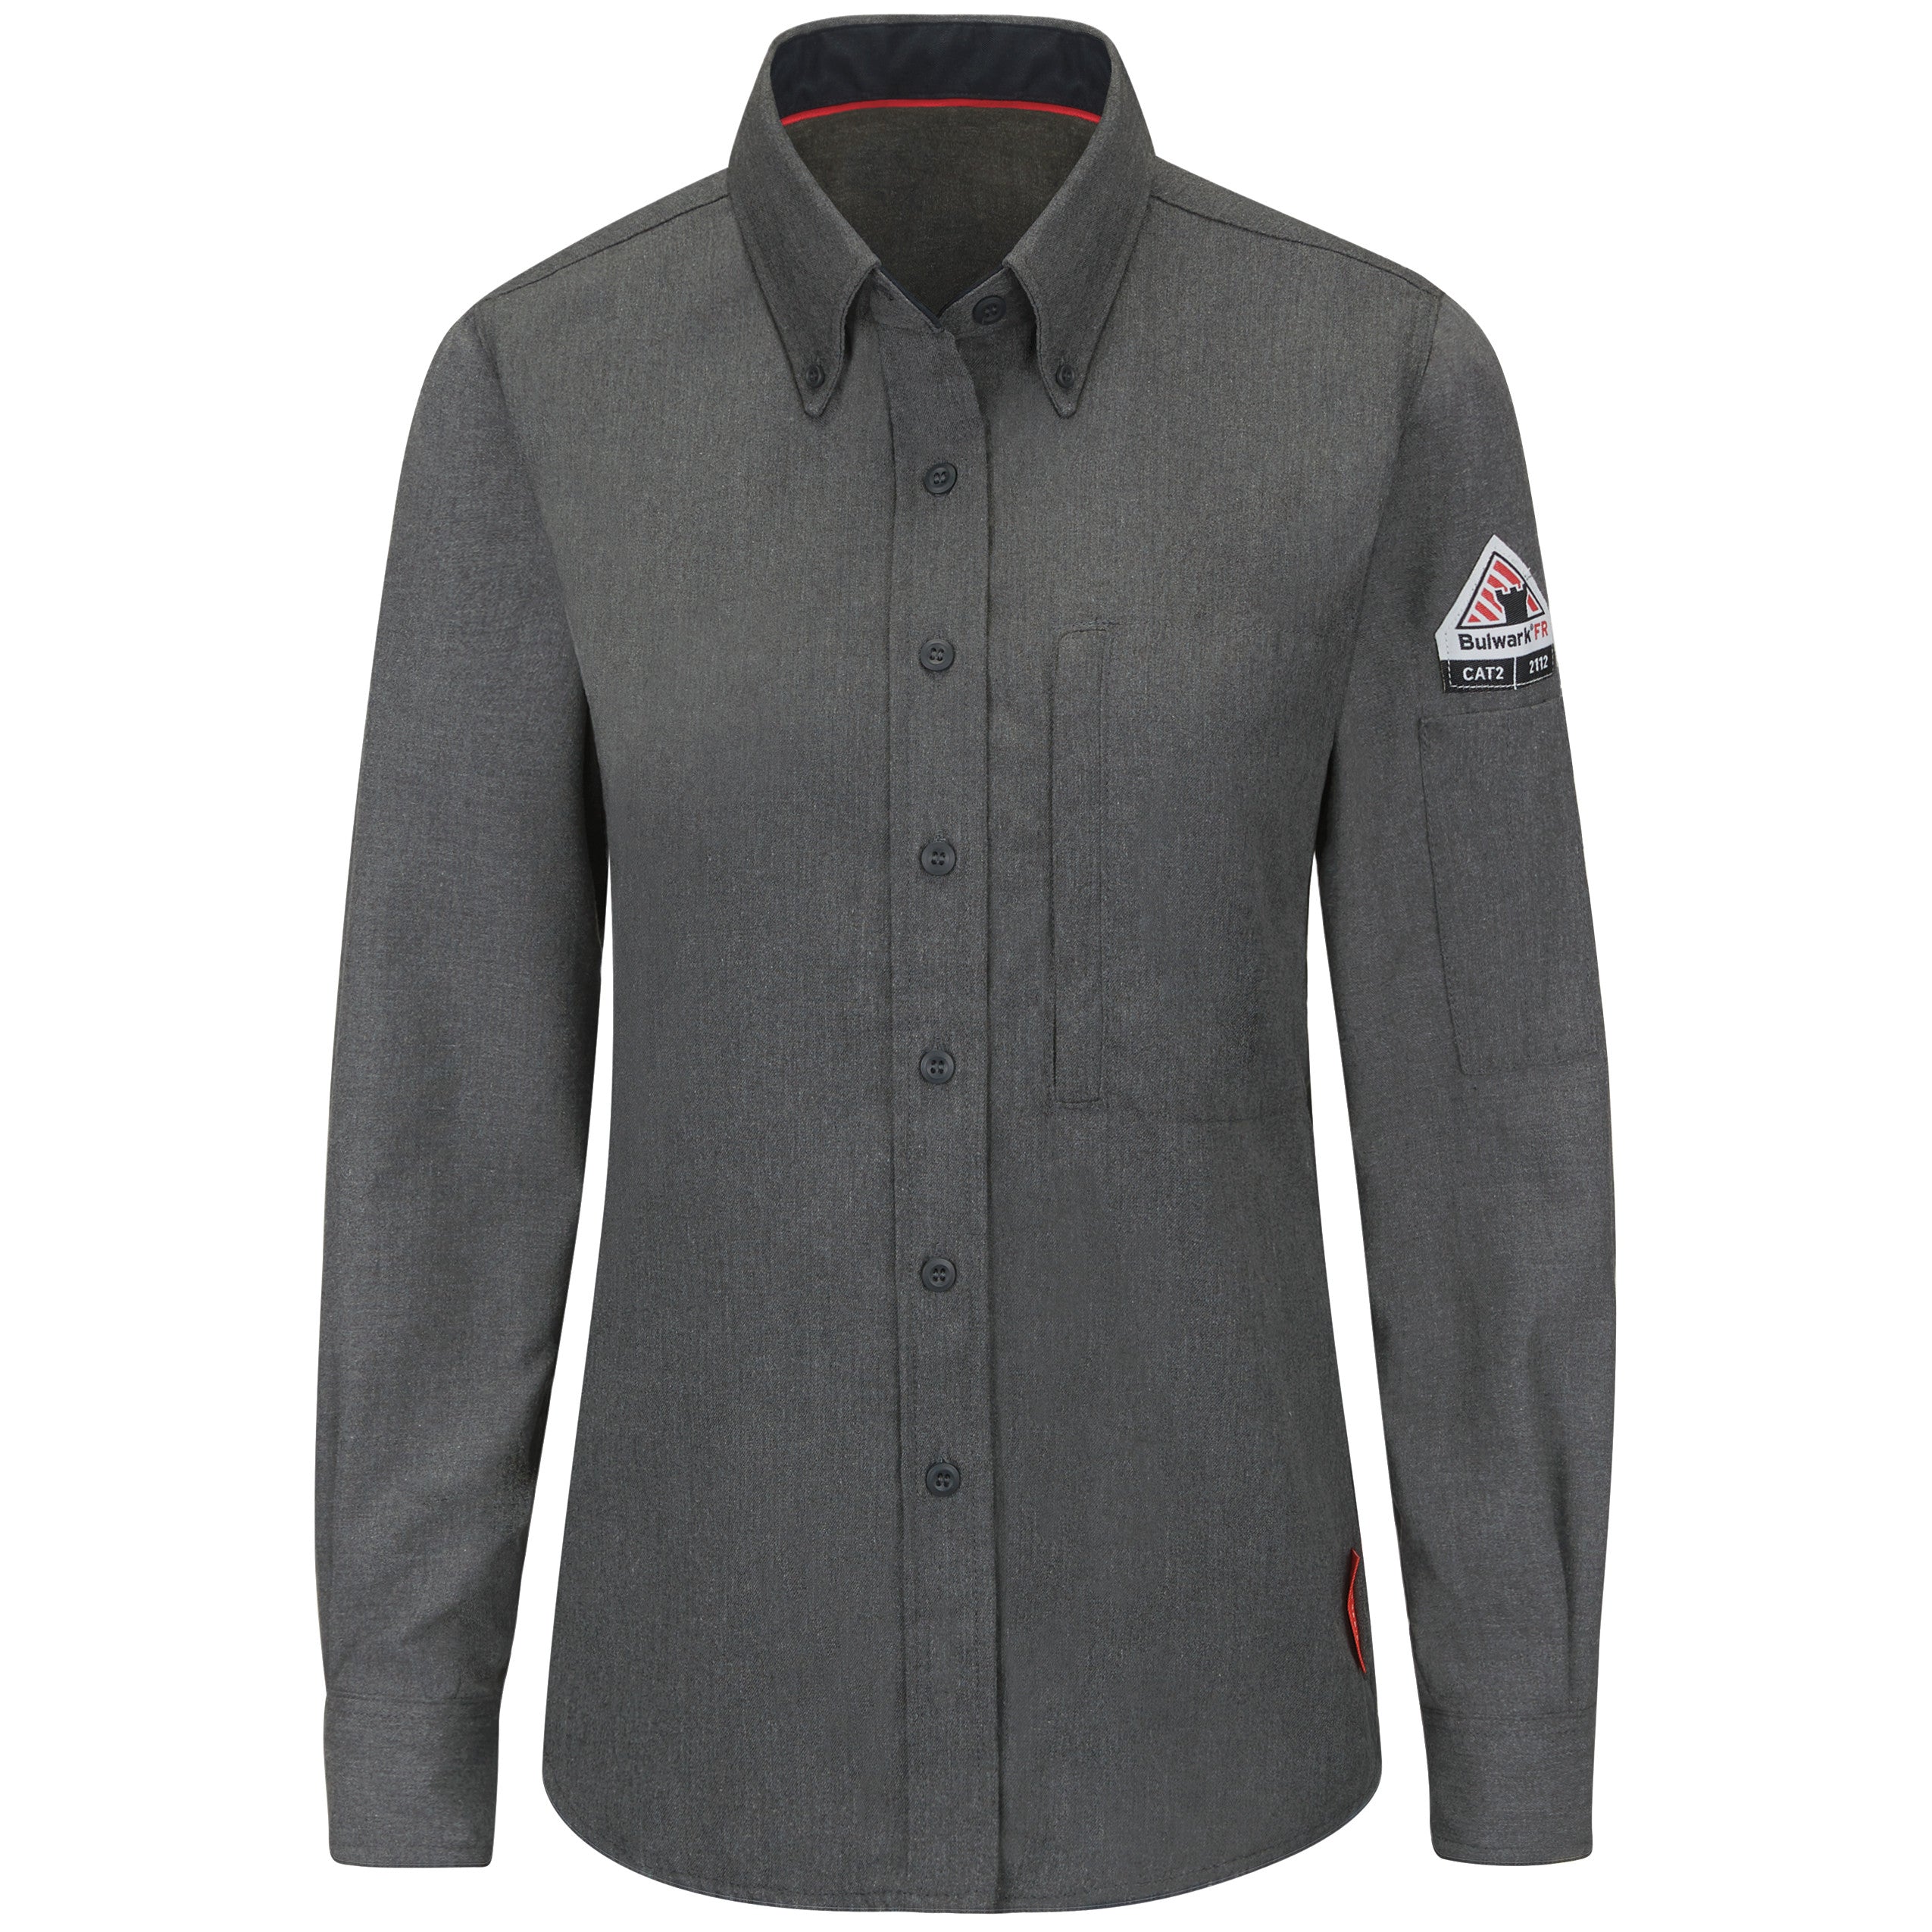 iQ Series® Comfort Woven Women's Lightweight Shirt QS51 - Dark Grey-eSafety Supplies, Inc